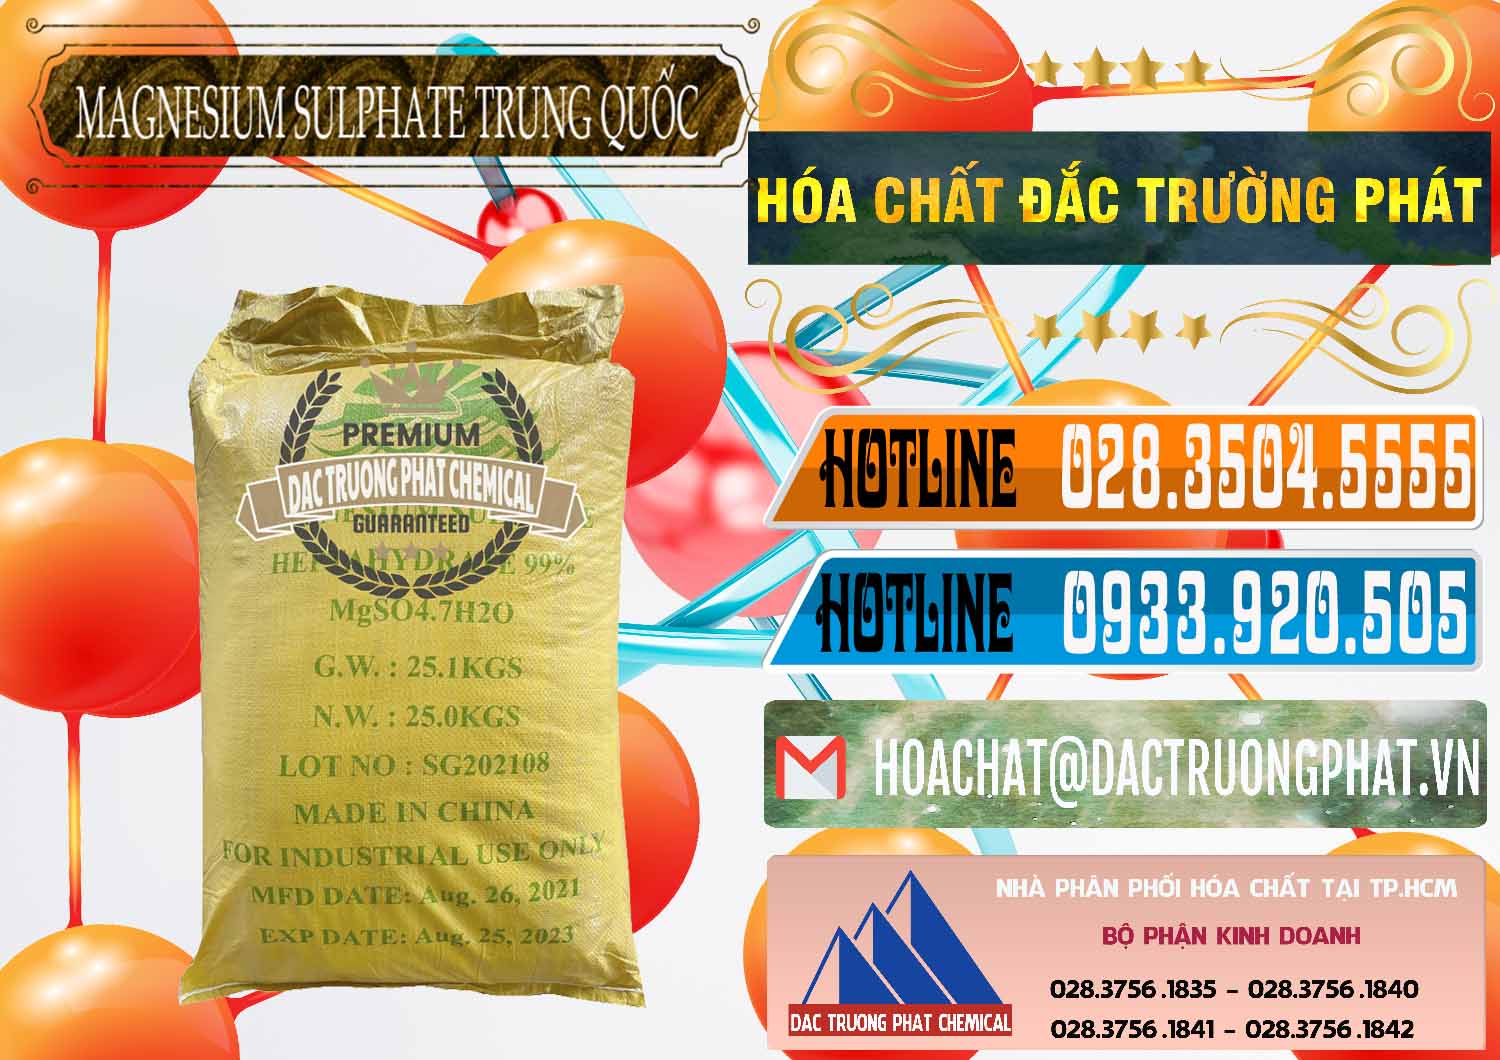 Nơi nhập khẩu - bán MGSO4.7H2O – Magnesium Sulphate Heptahydrate 99% Trung Quốc China - 0440 - Phân phối ( cung cấp ) hóa chất tại TP.HCM - stmp.net